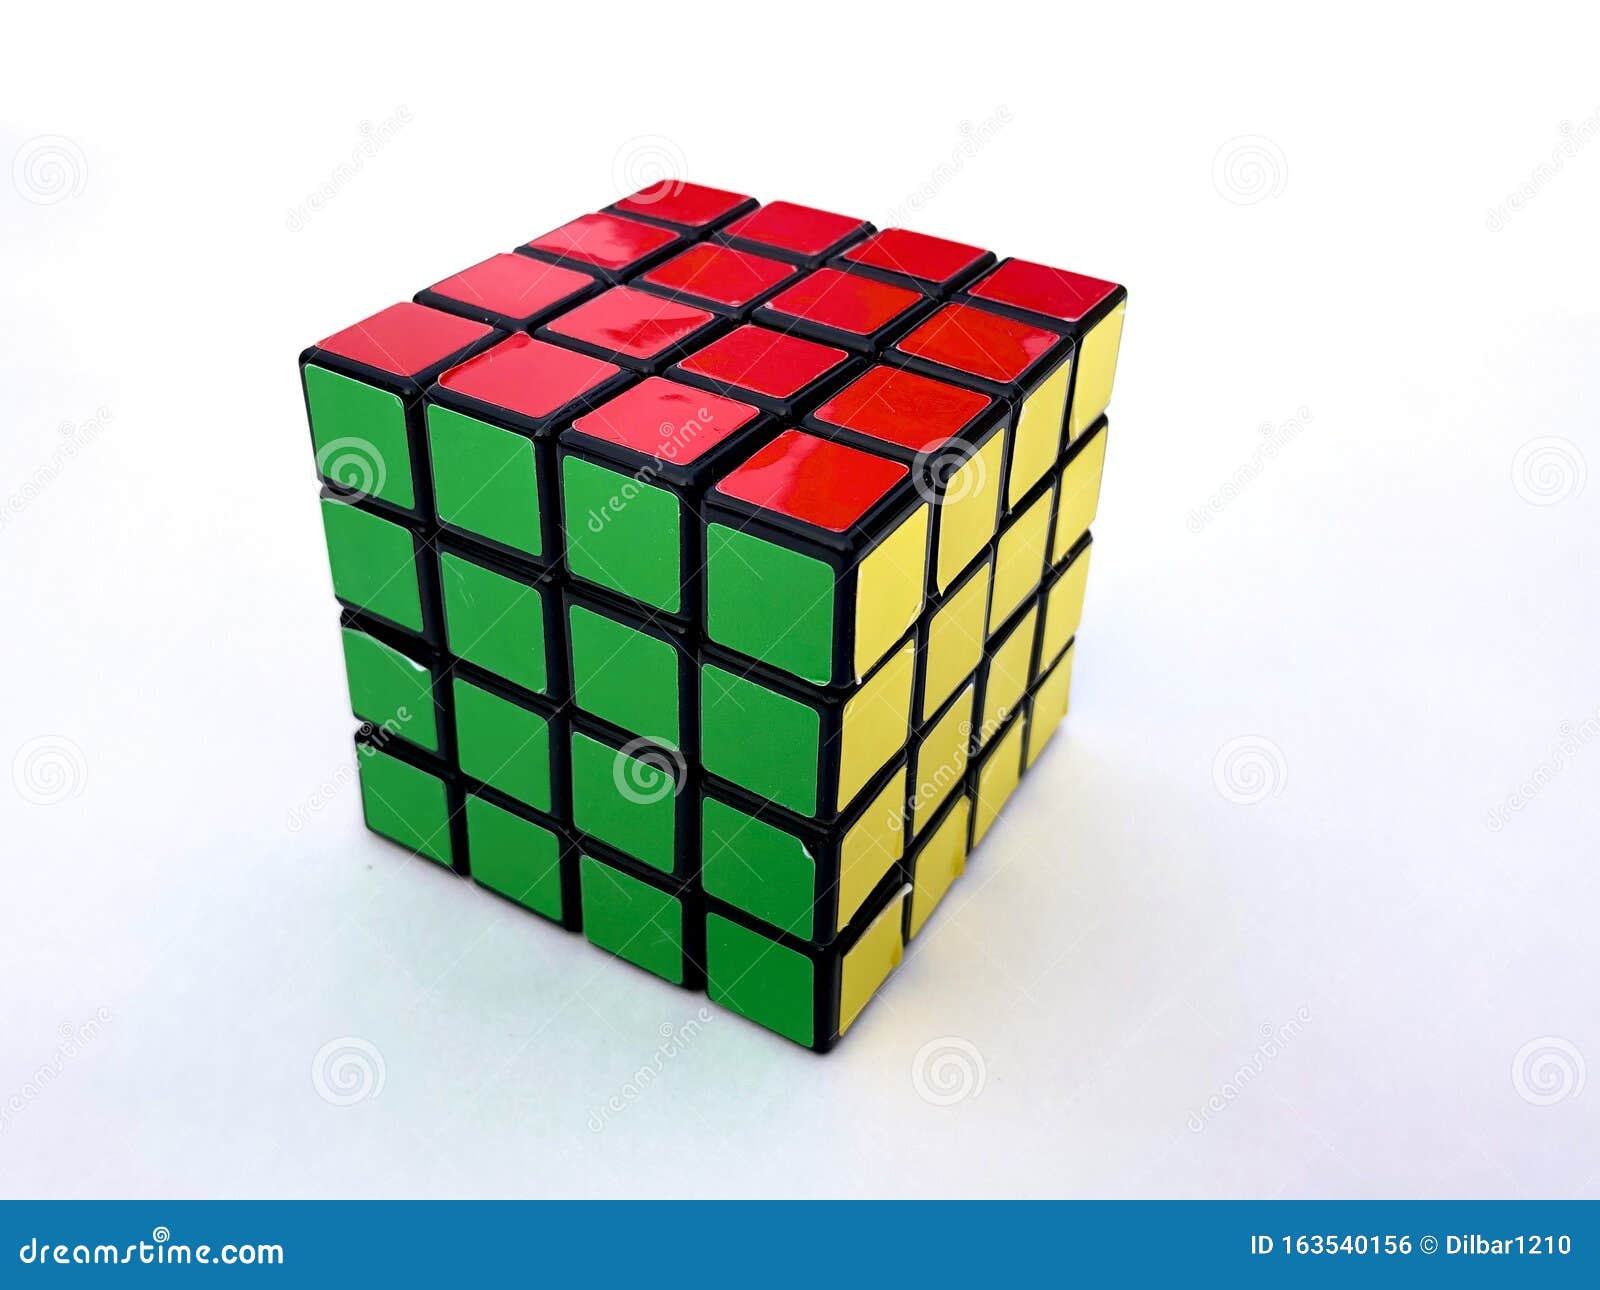 impliciet olifant Latijns De Kubus Van Het Gekleurde Rubik Met Gezichten Van Rode, Groene, Gele  Kleuren Op Een Witte Achtergrond Redactionele Foto - Image of raadsel,  kerel: 163540156